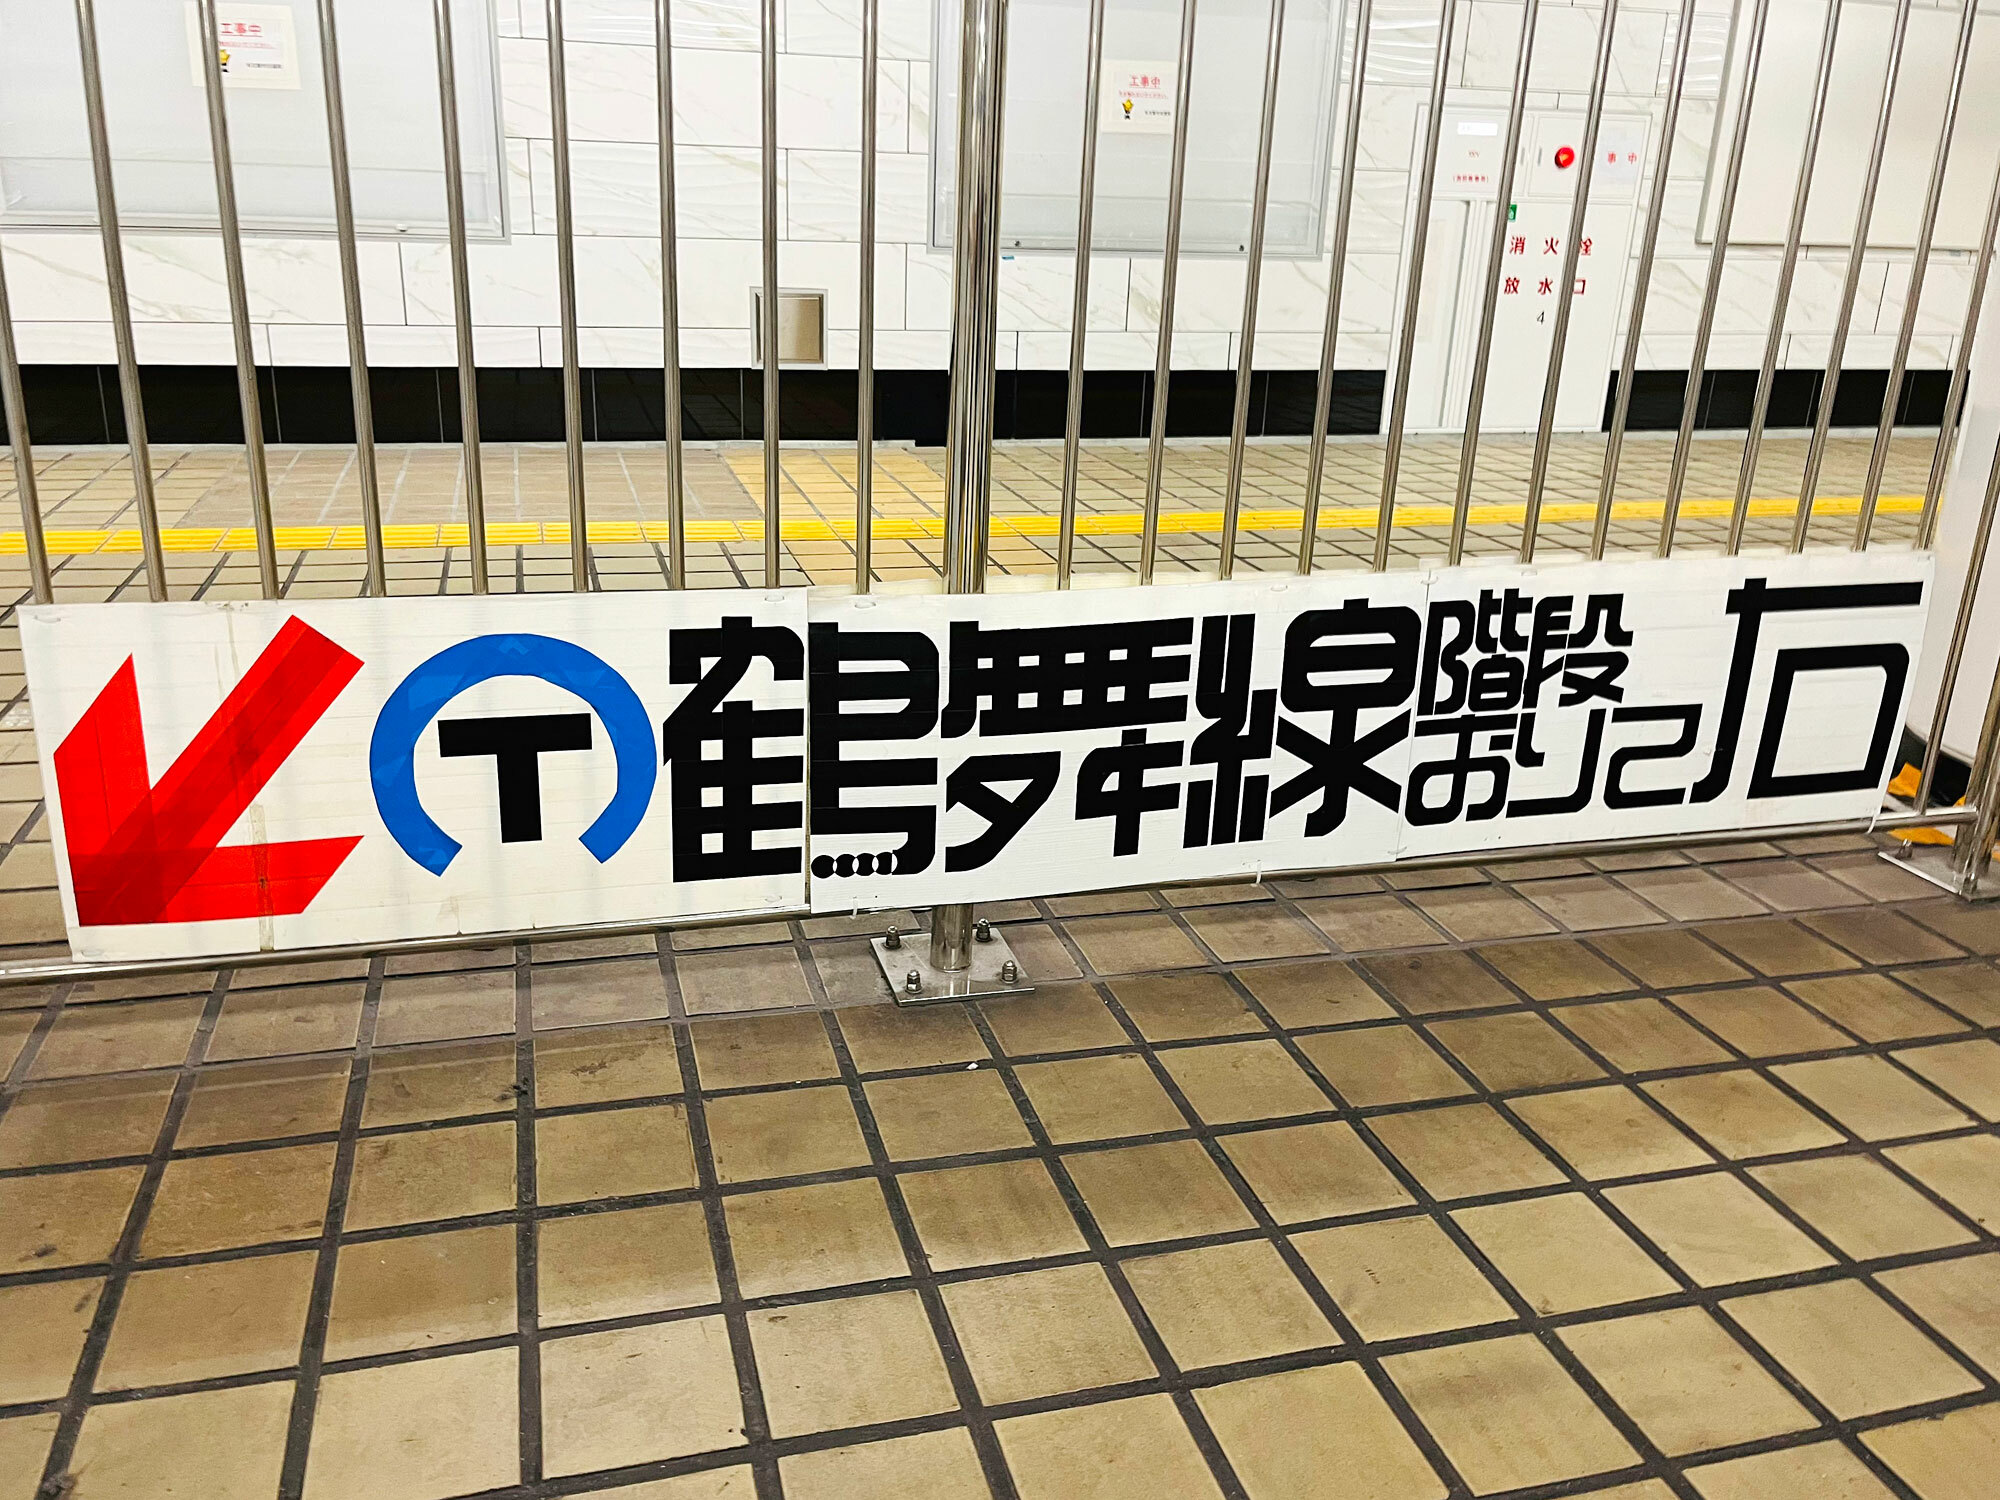 途中駅で見た鶴舞線のタイポグラフィがかっこよかったです